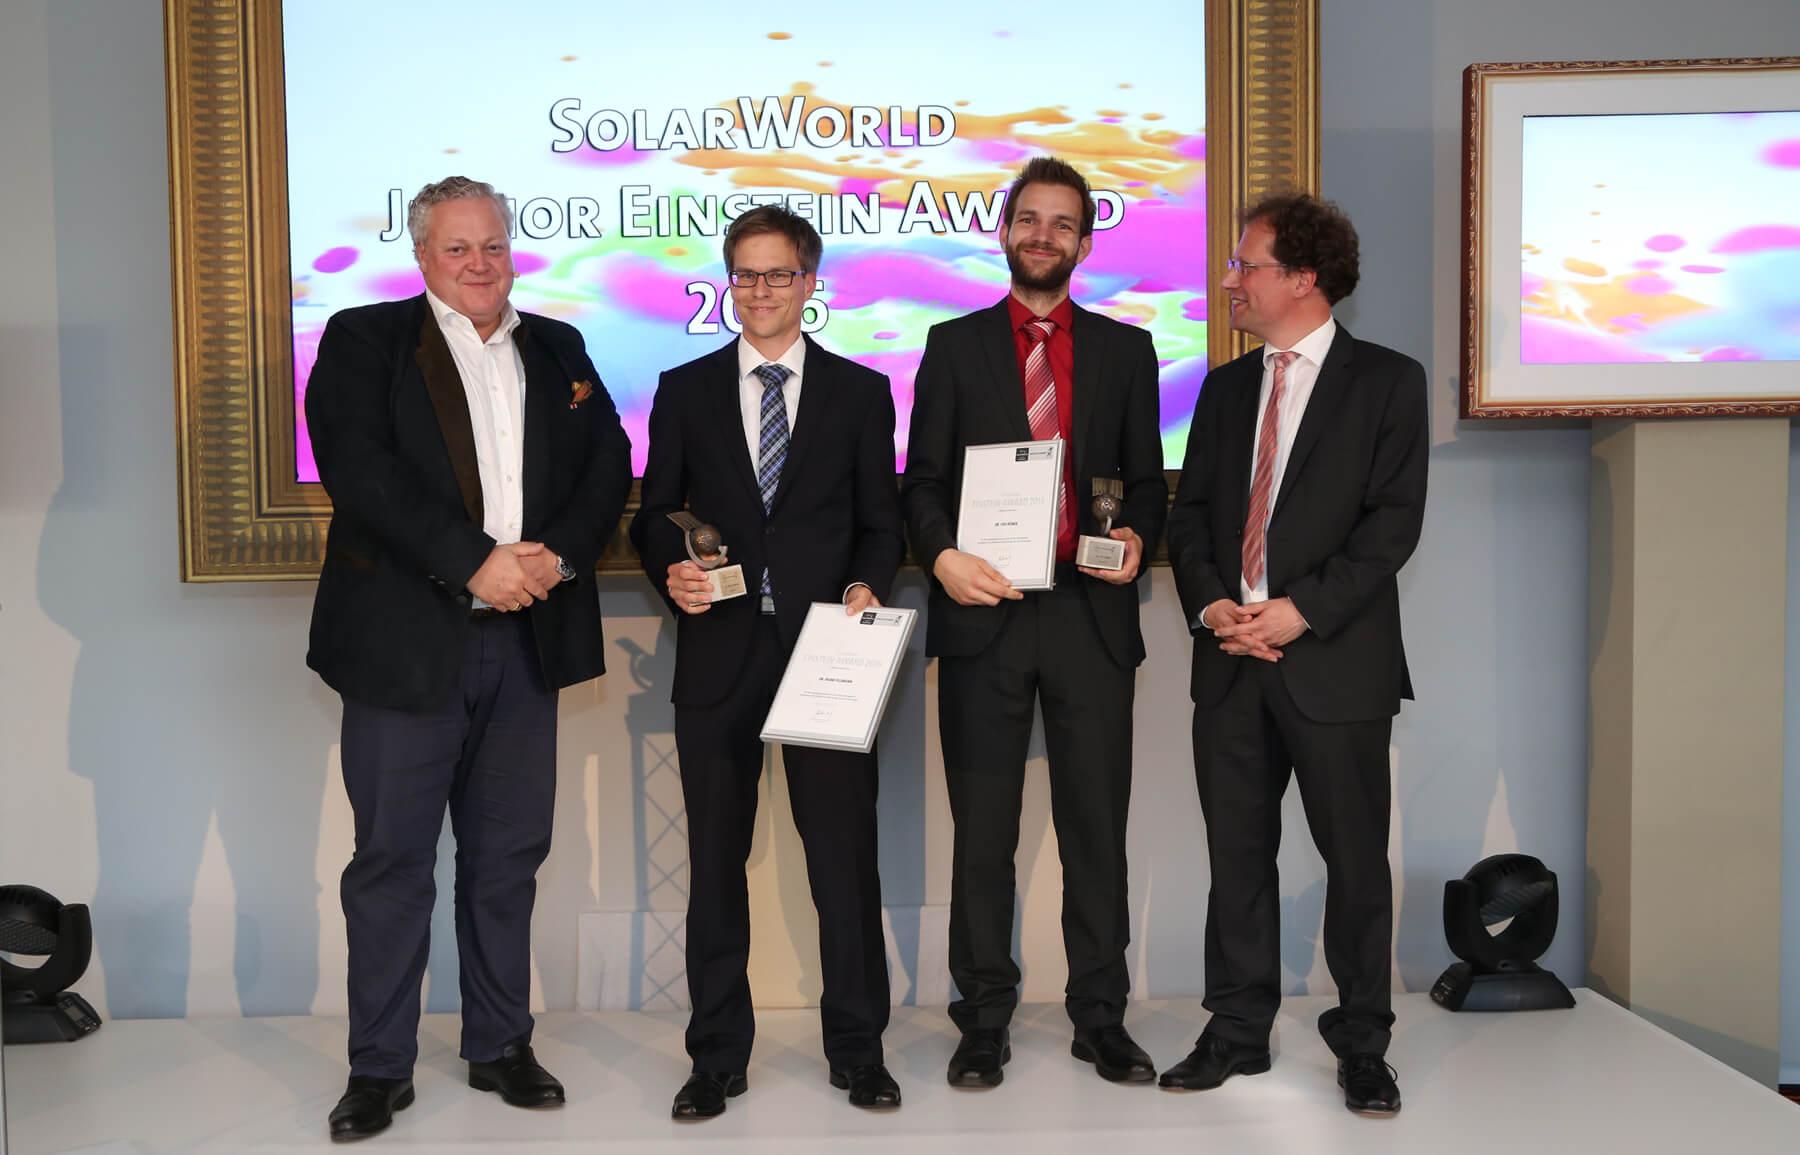 SolarWorld Junior Einstein Award 2016.